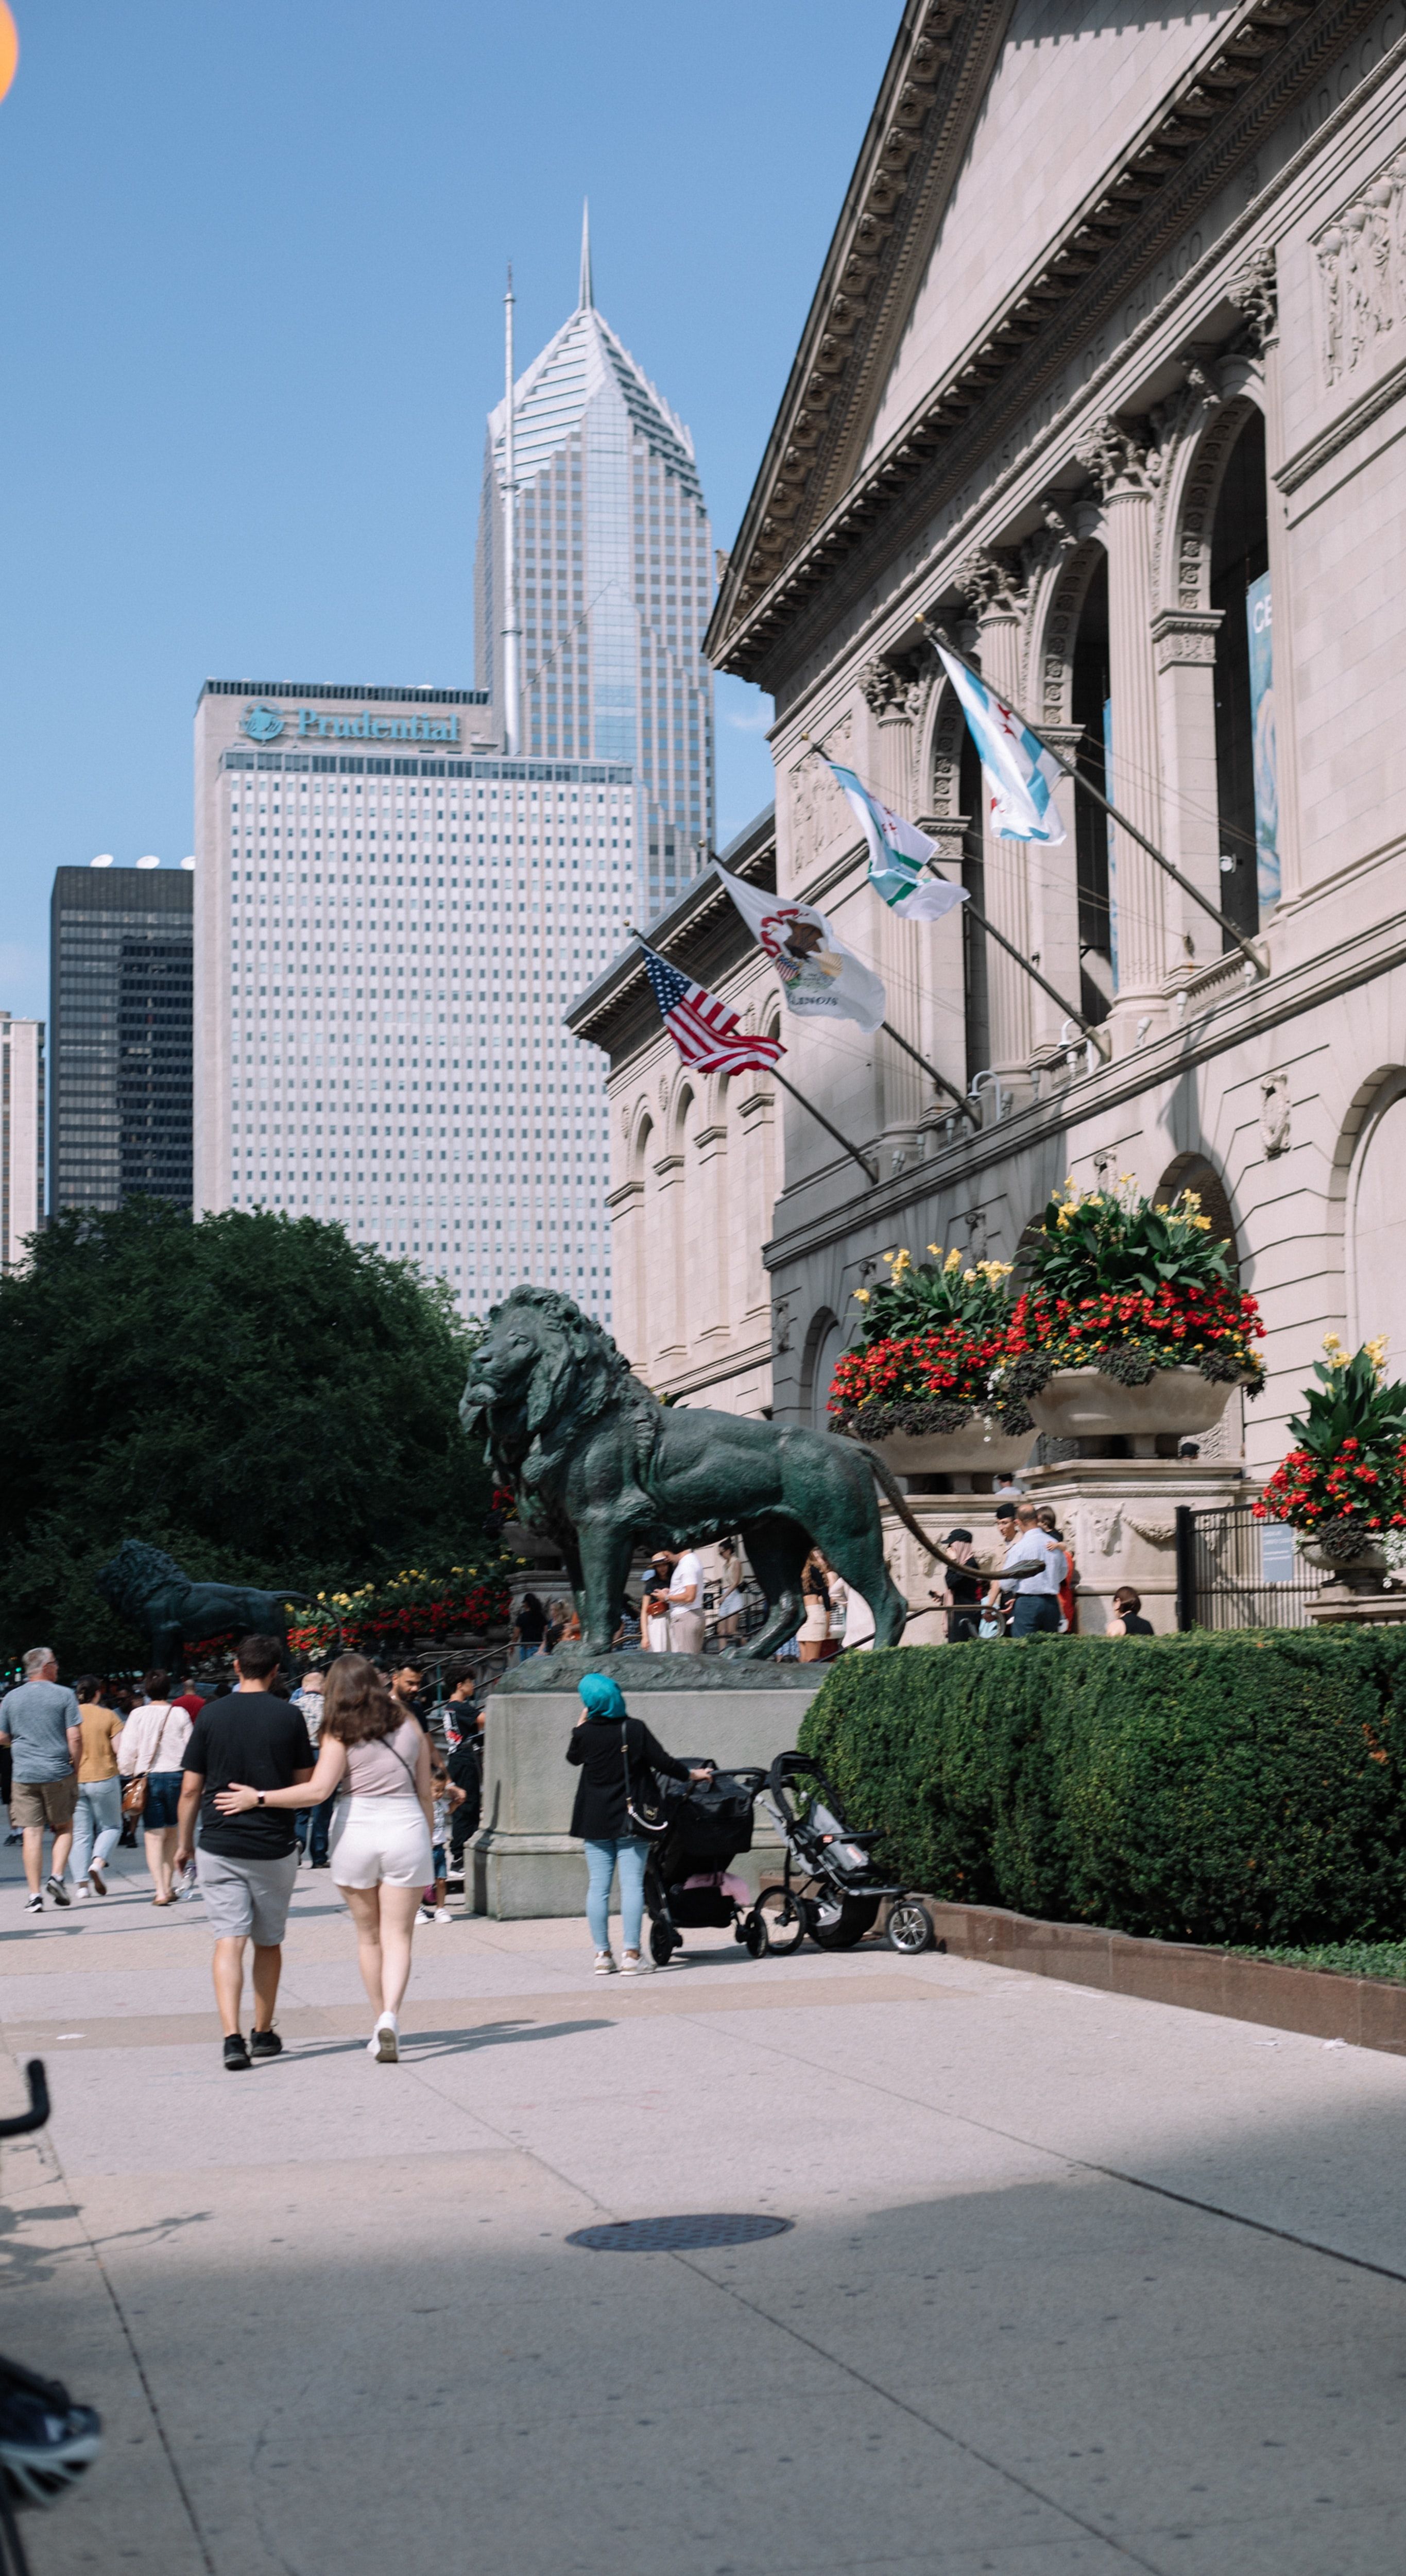 Art Institute of Chicago, South Michigan Avenue, Chicago, Illinois